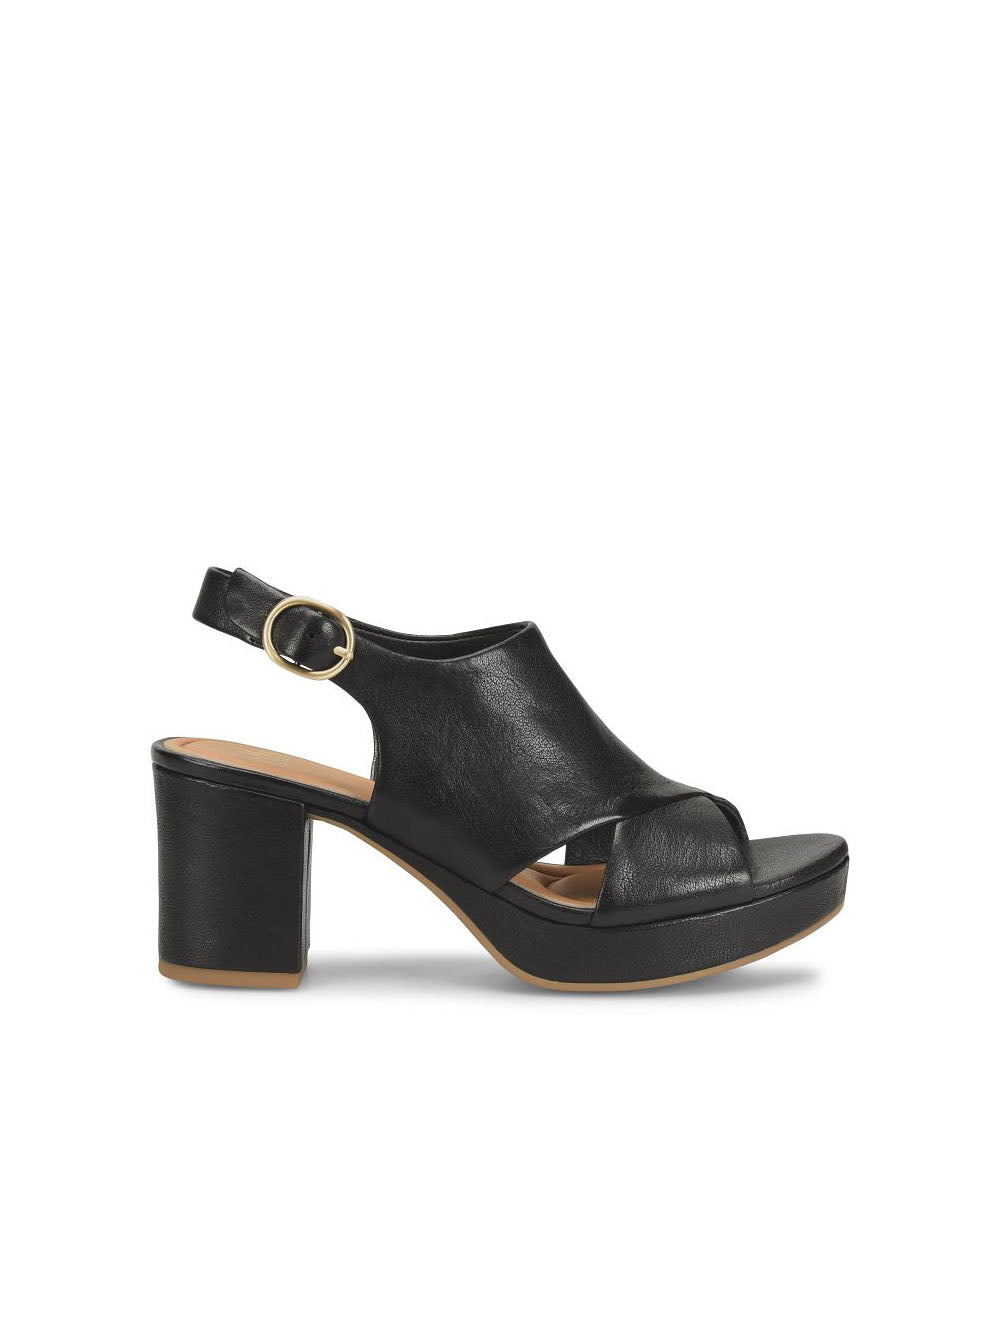 sofft shoes liv platform slingback sandal in black